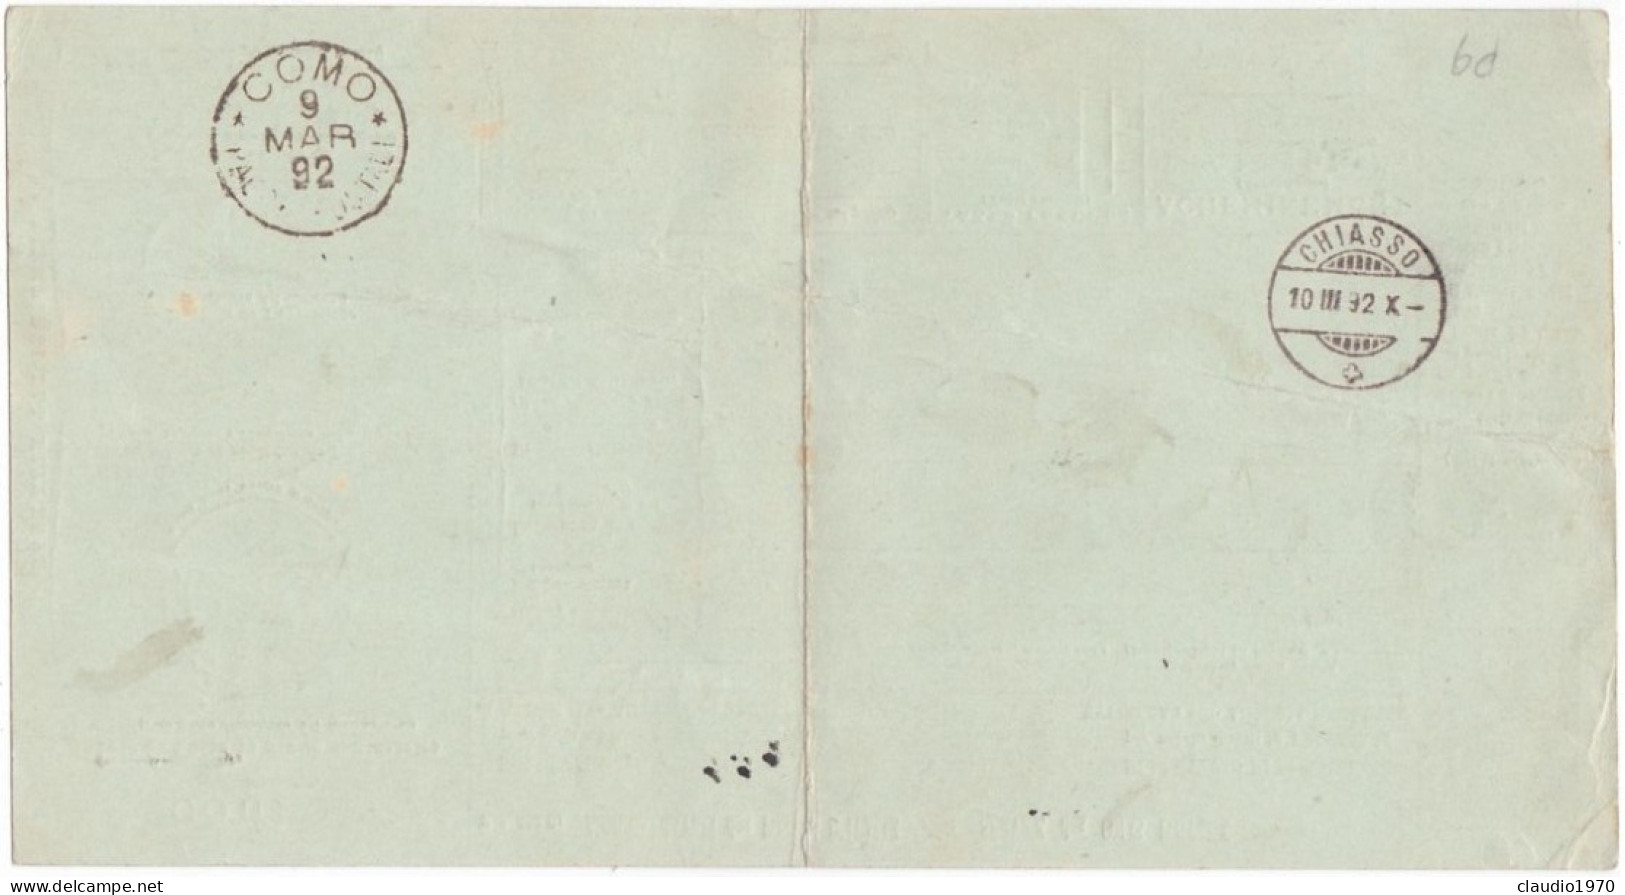 ITALIA - REGNO - CERNOBBIO (COMO) - BOLLETTINI PACCHI POSTALE L.1,25 - VIAGGIATO PER CHIASSO - SVIZZERA - 1892  - P. 9 - Colis-postaux